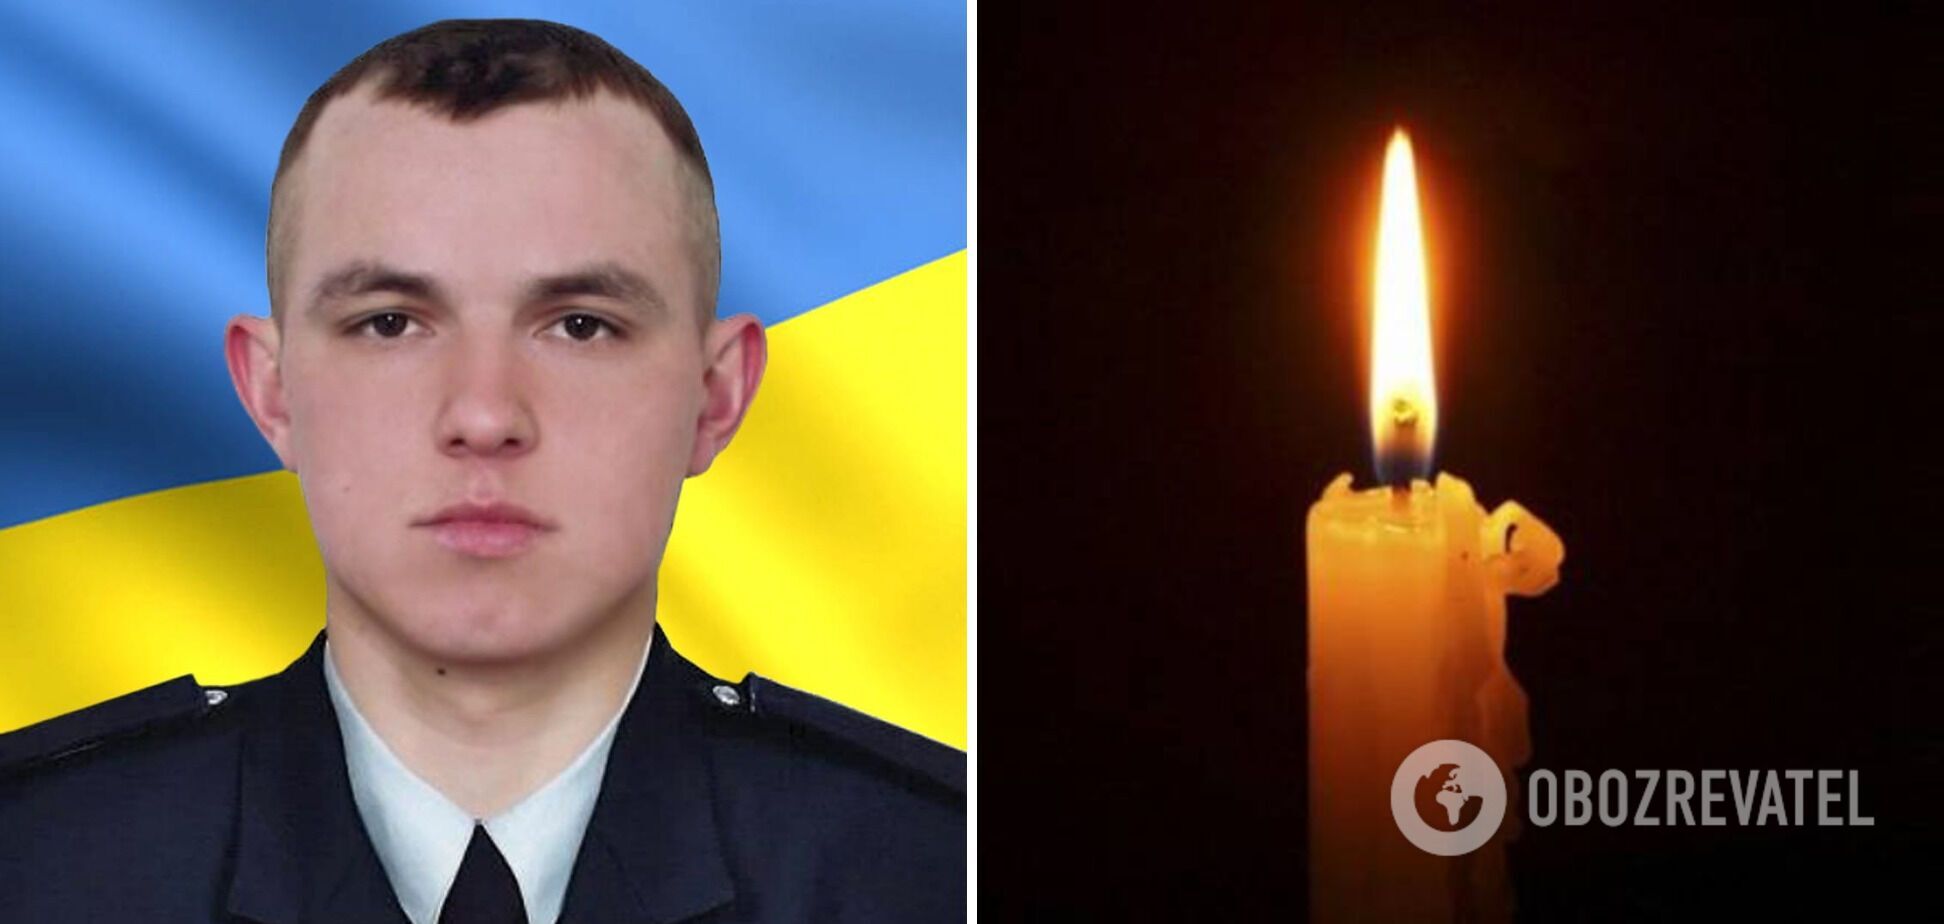 Впереди была целая жизнь: в боях за Украину погиб 24-летний защитник с Тернопольщины. Фото